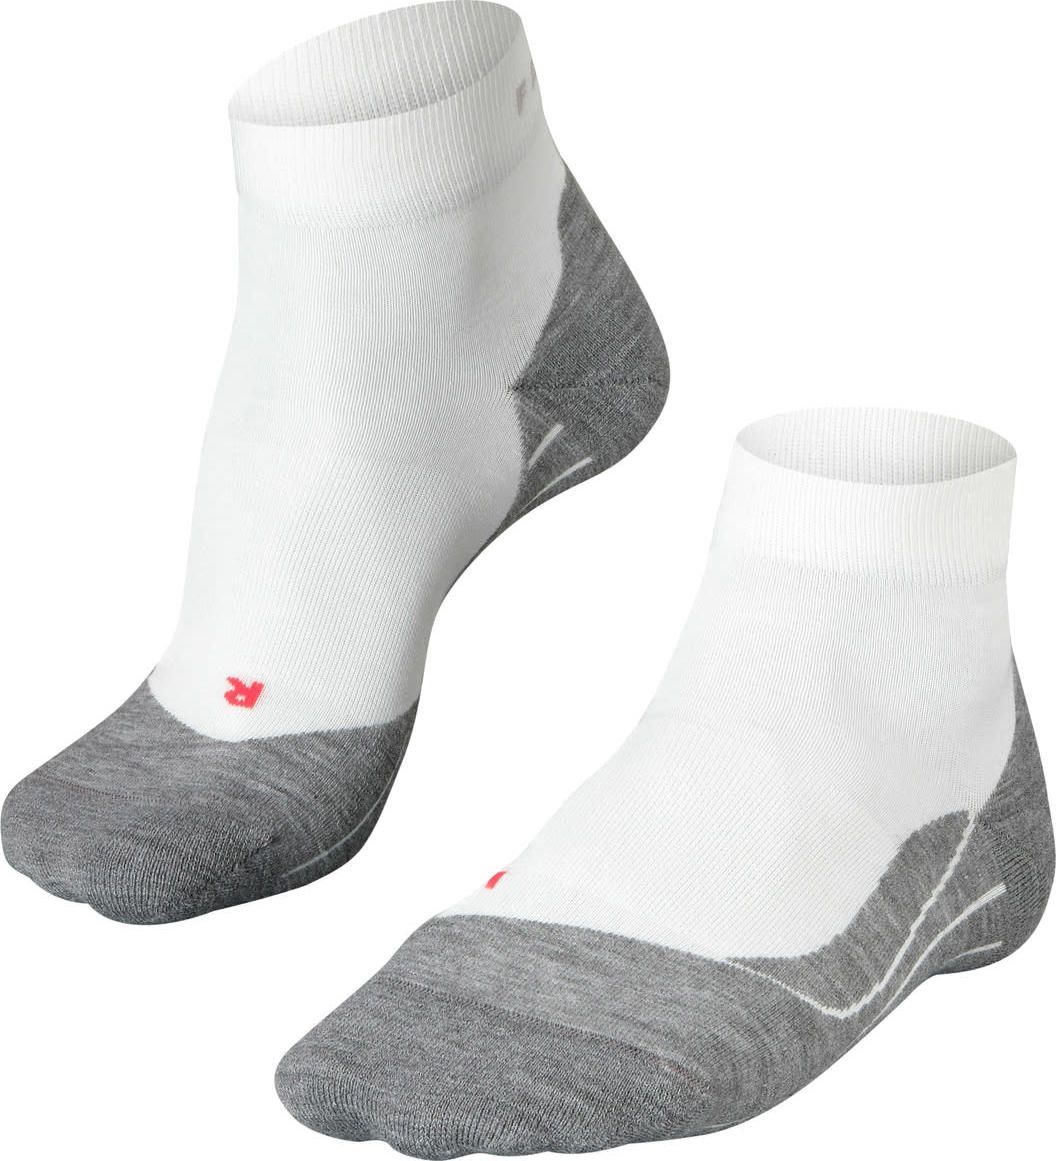 Falke Men's RU4 Short Running Socks White-mix